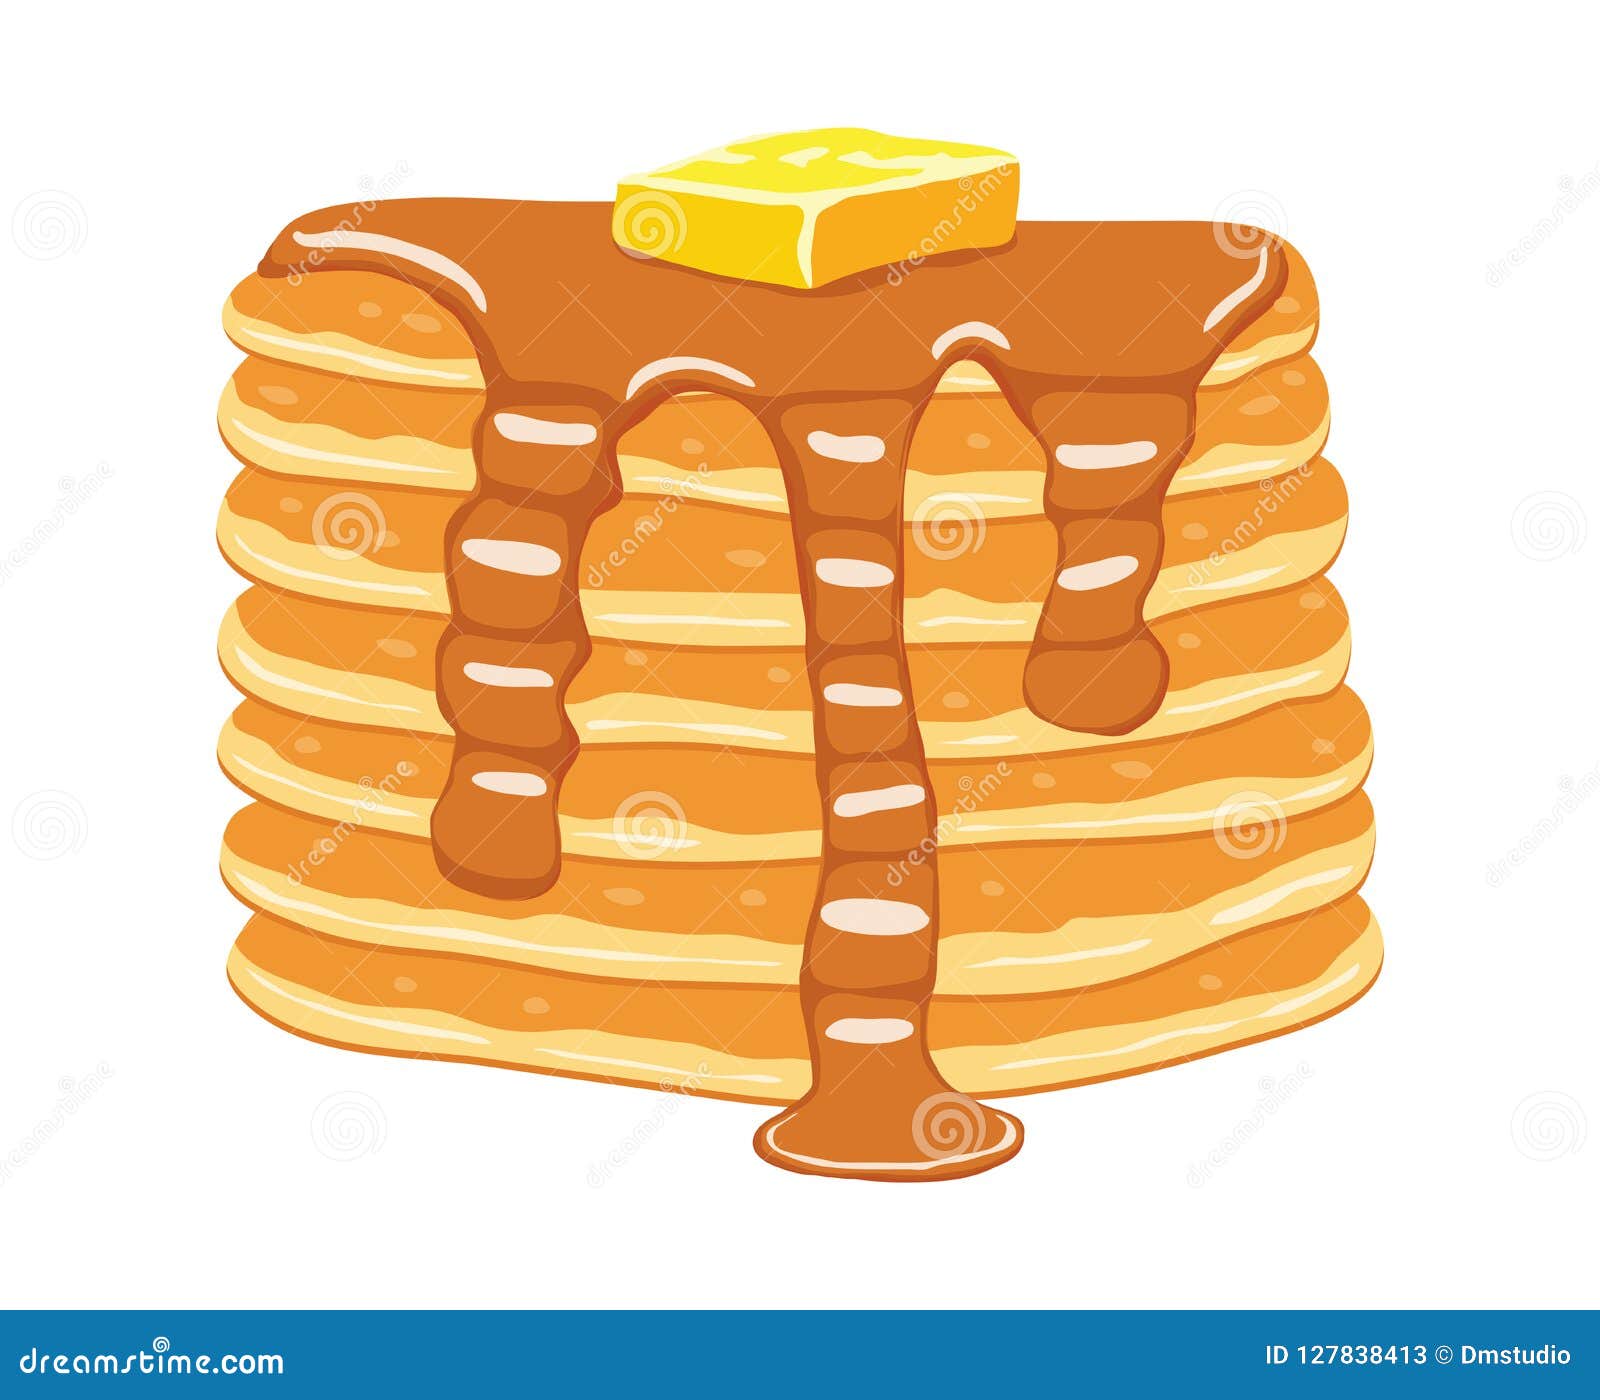  pancake stack